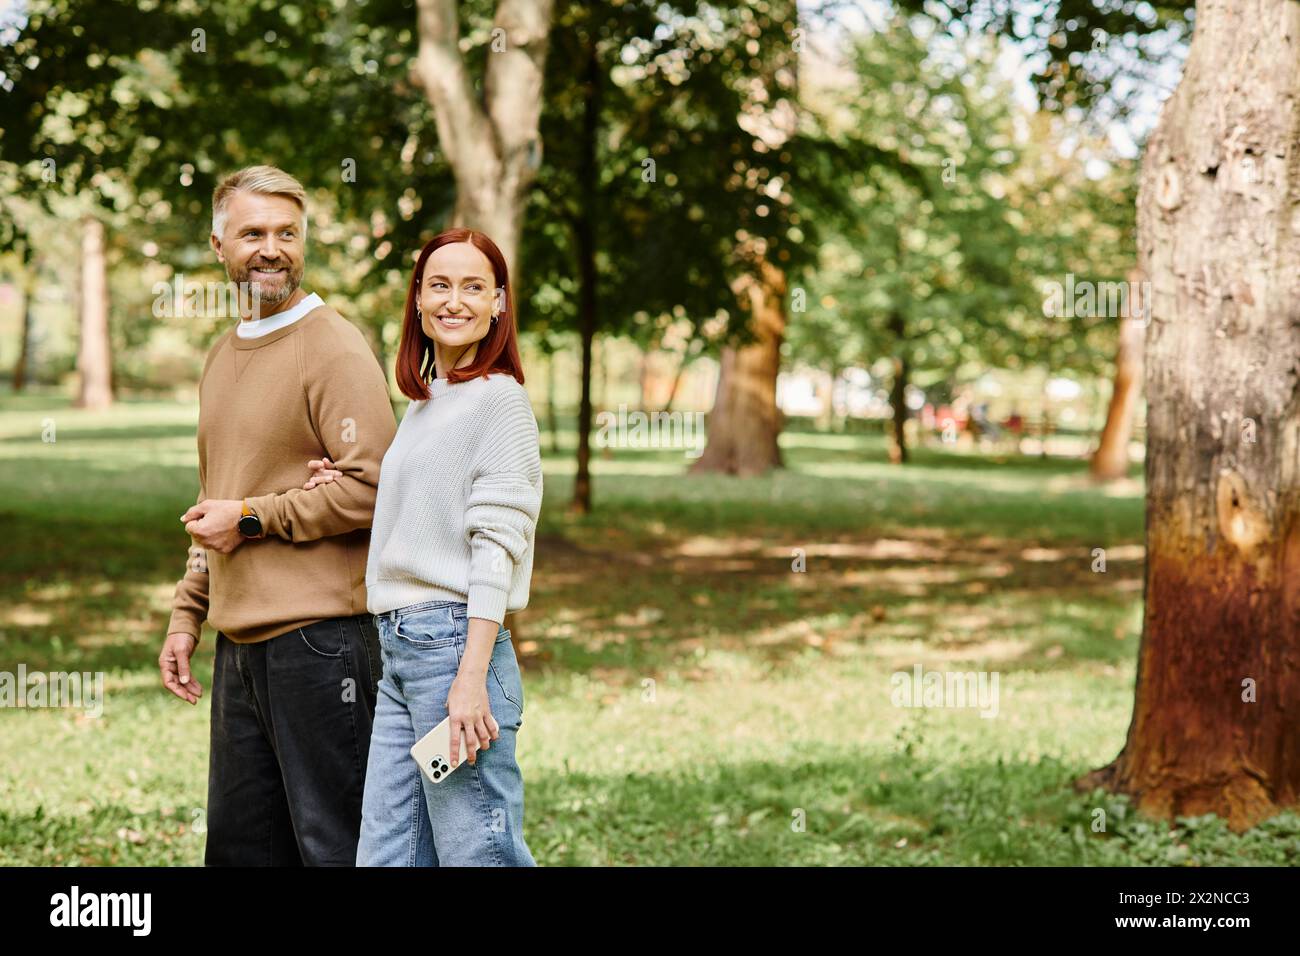 Ein Mann und eine Frau in lässiger Kleidung stehen nebeneinander in einem üppigen Park. Stockfoto